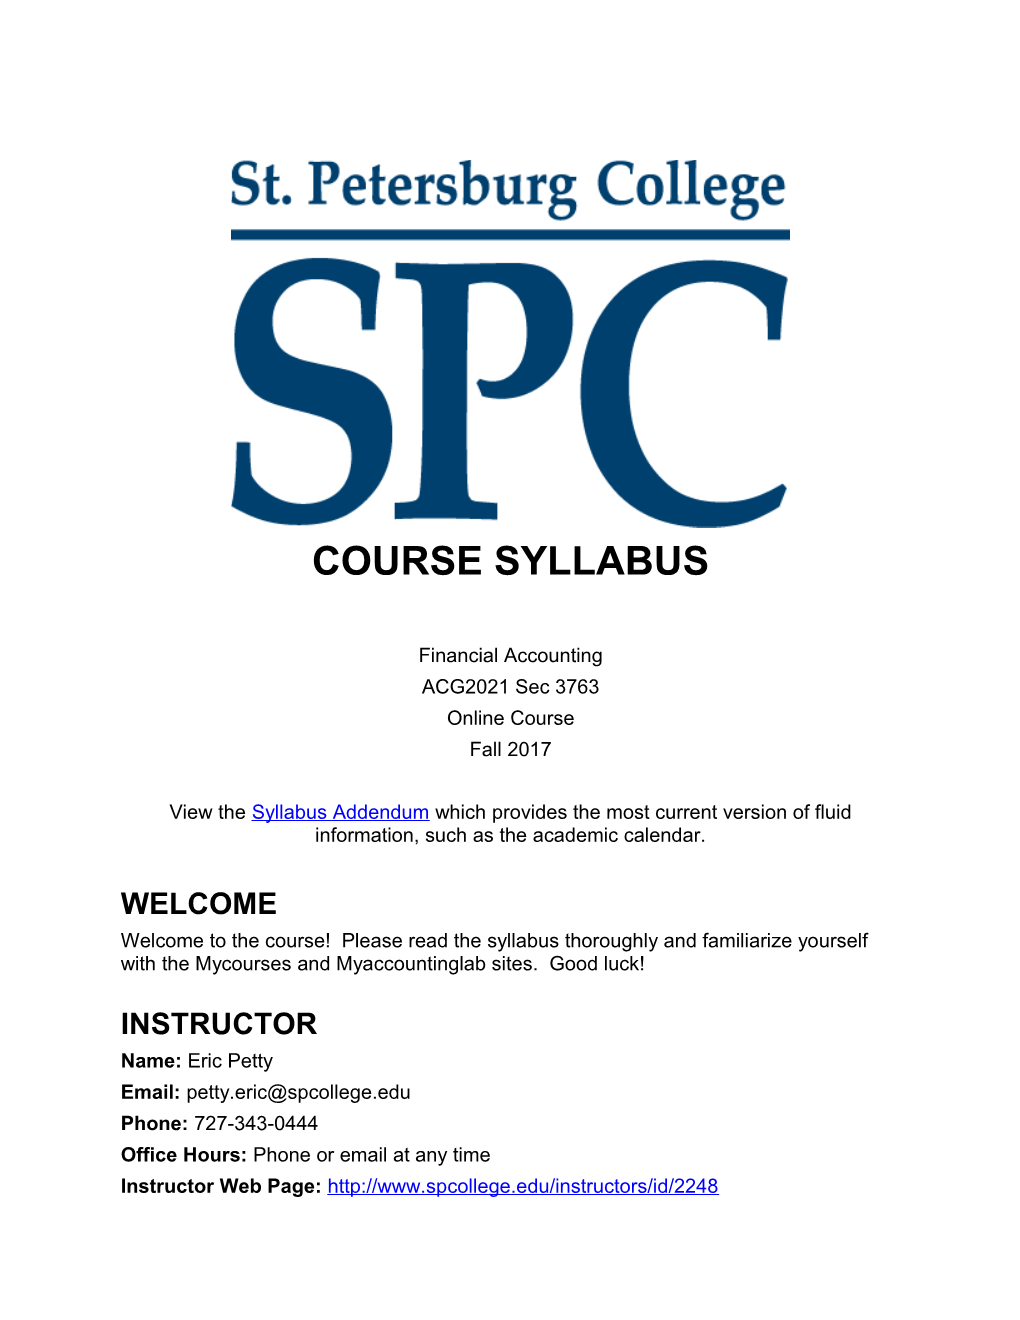 Course Syllabus s33